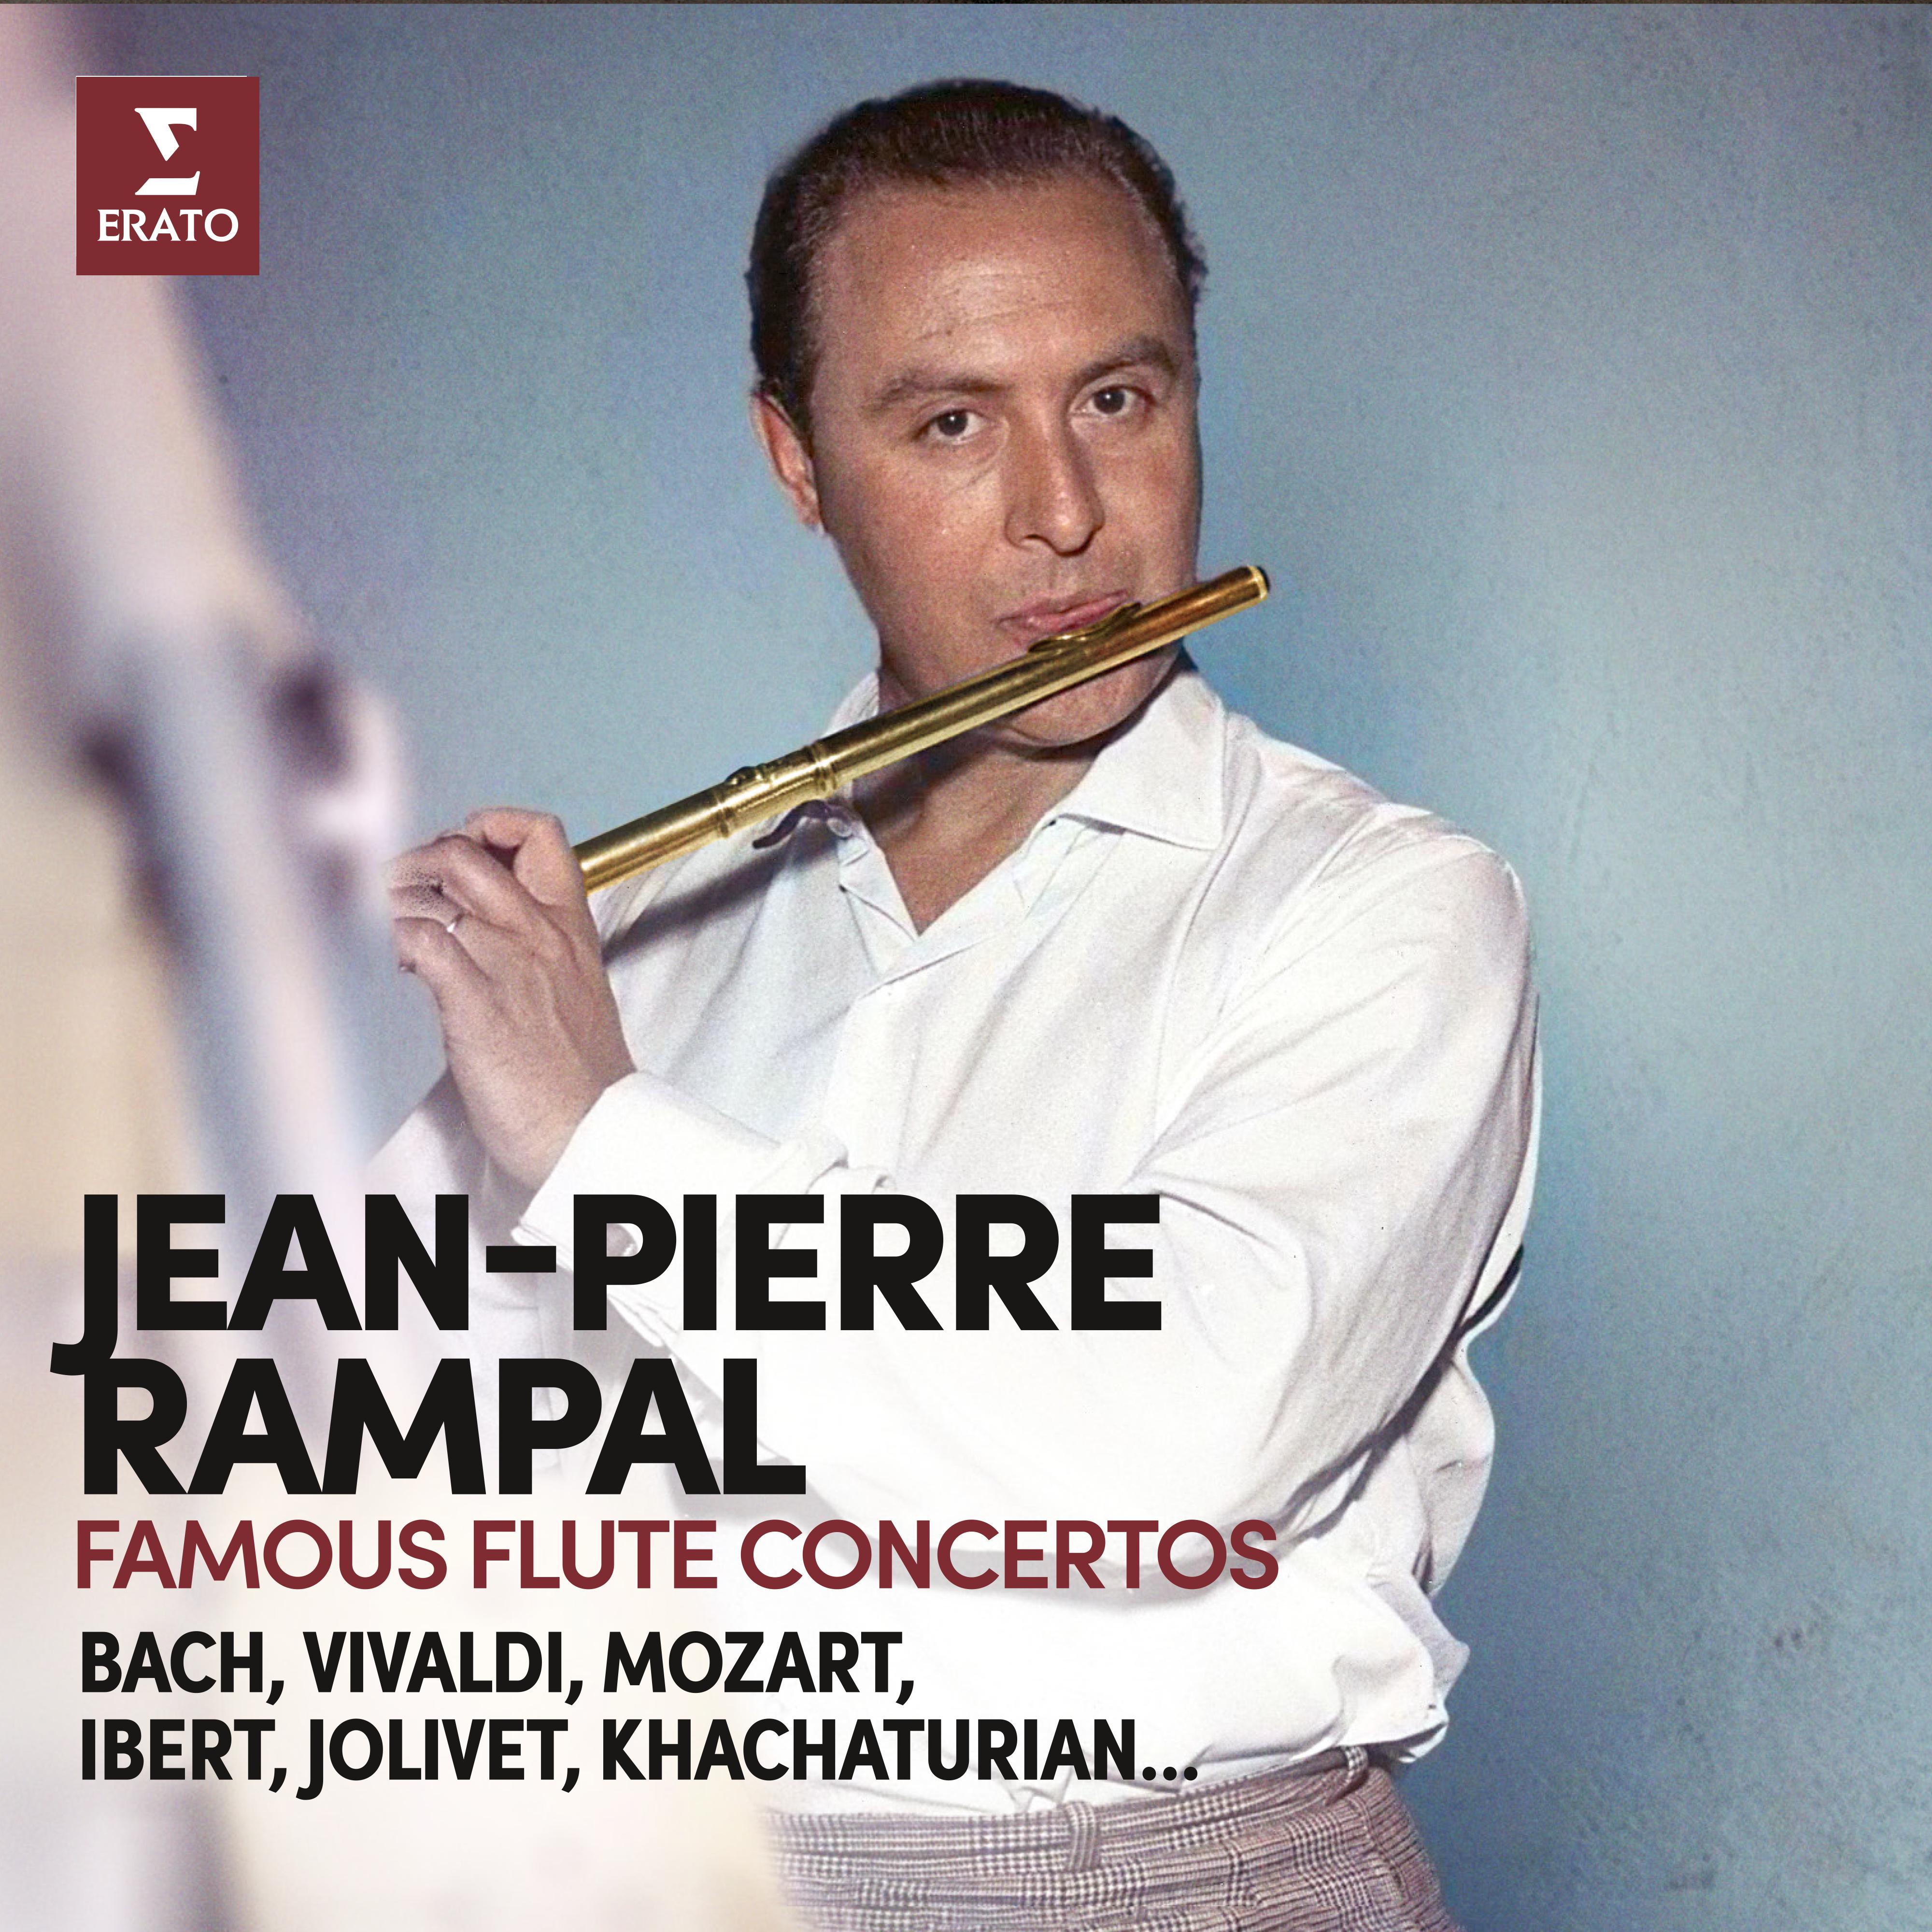 Jean-Pierre Rampal - Flute Concerto in E Minor, RV 431:II. Allegro